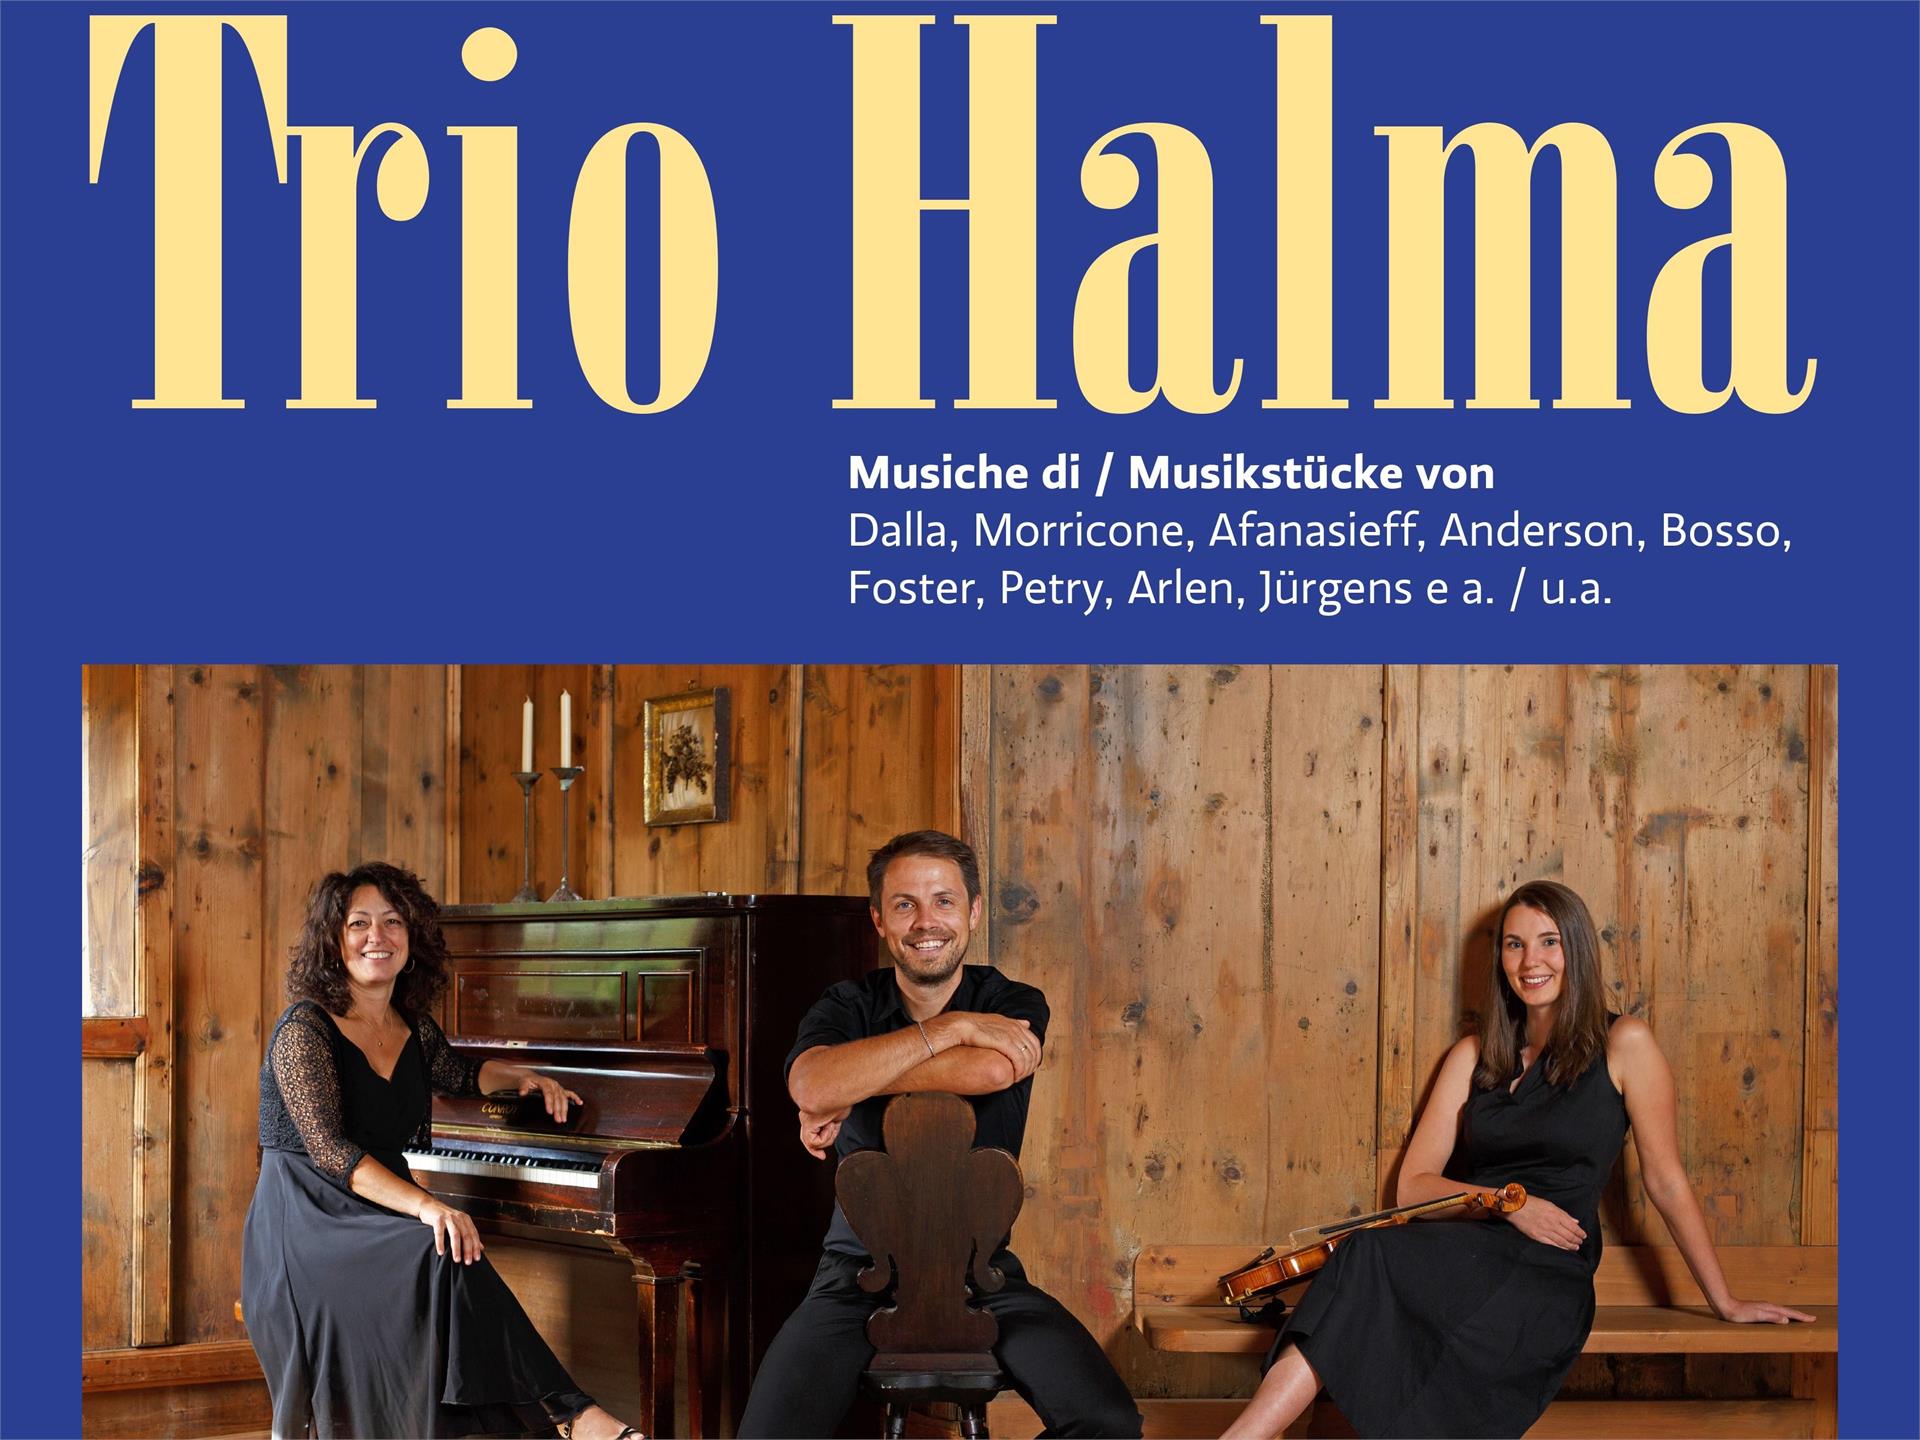 Concert - "Trio Halma"